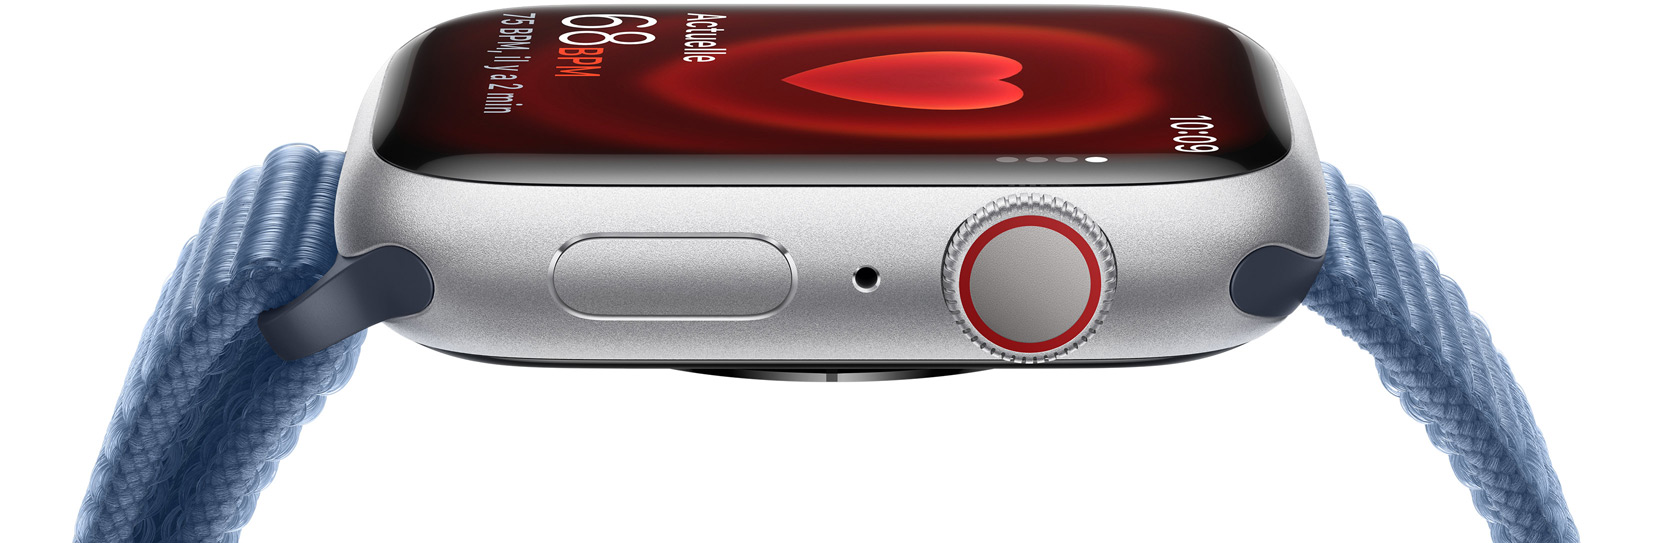 Une vue latérale d’une Apple Watch montrant la fréquence cardiaque d’une personne.